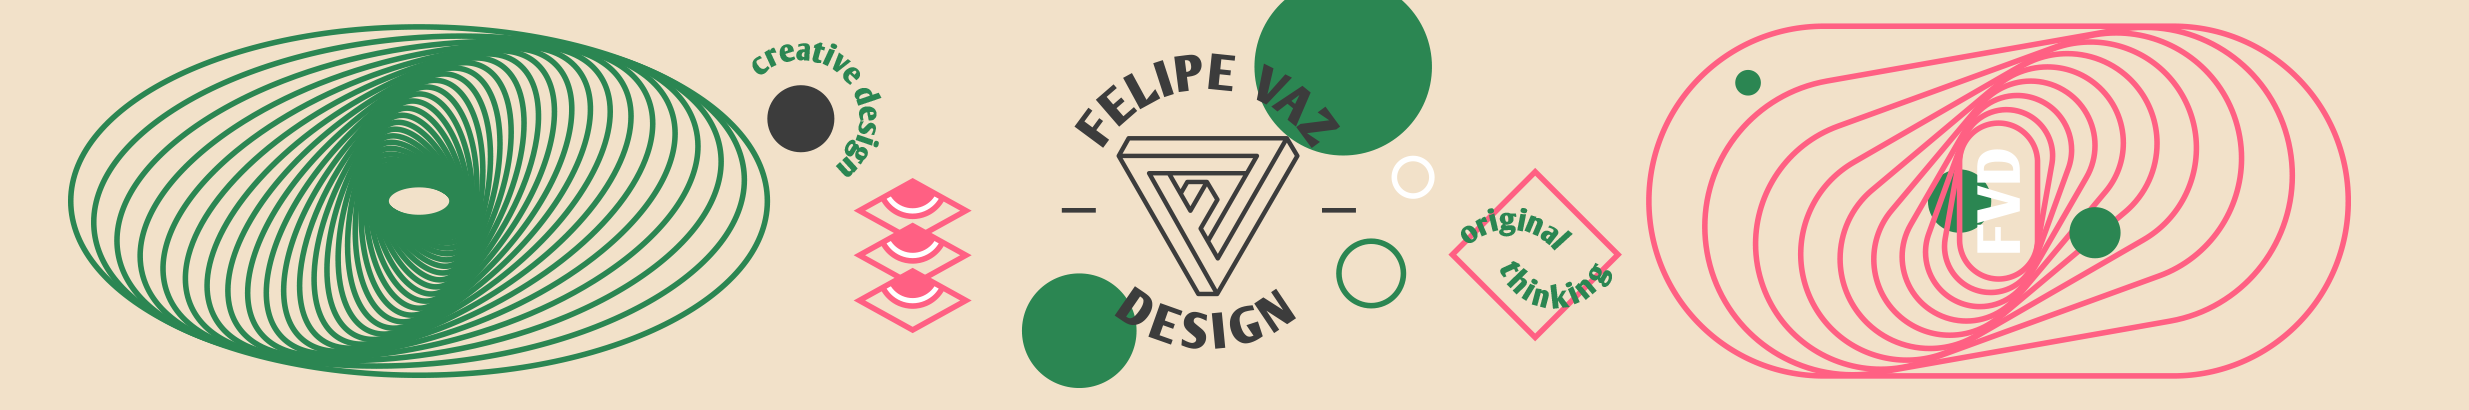 Profil-Banner von Felipe Vaz Design